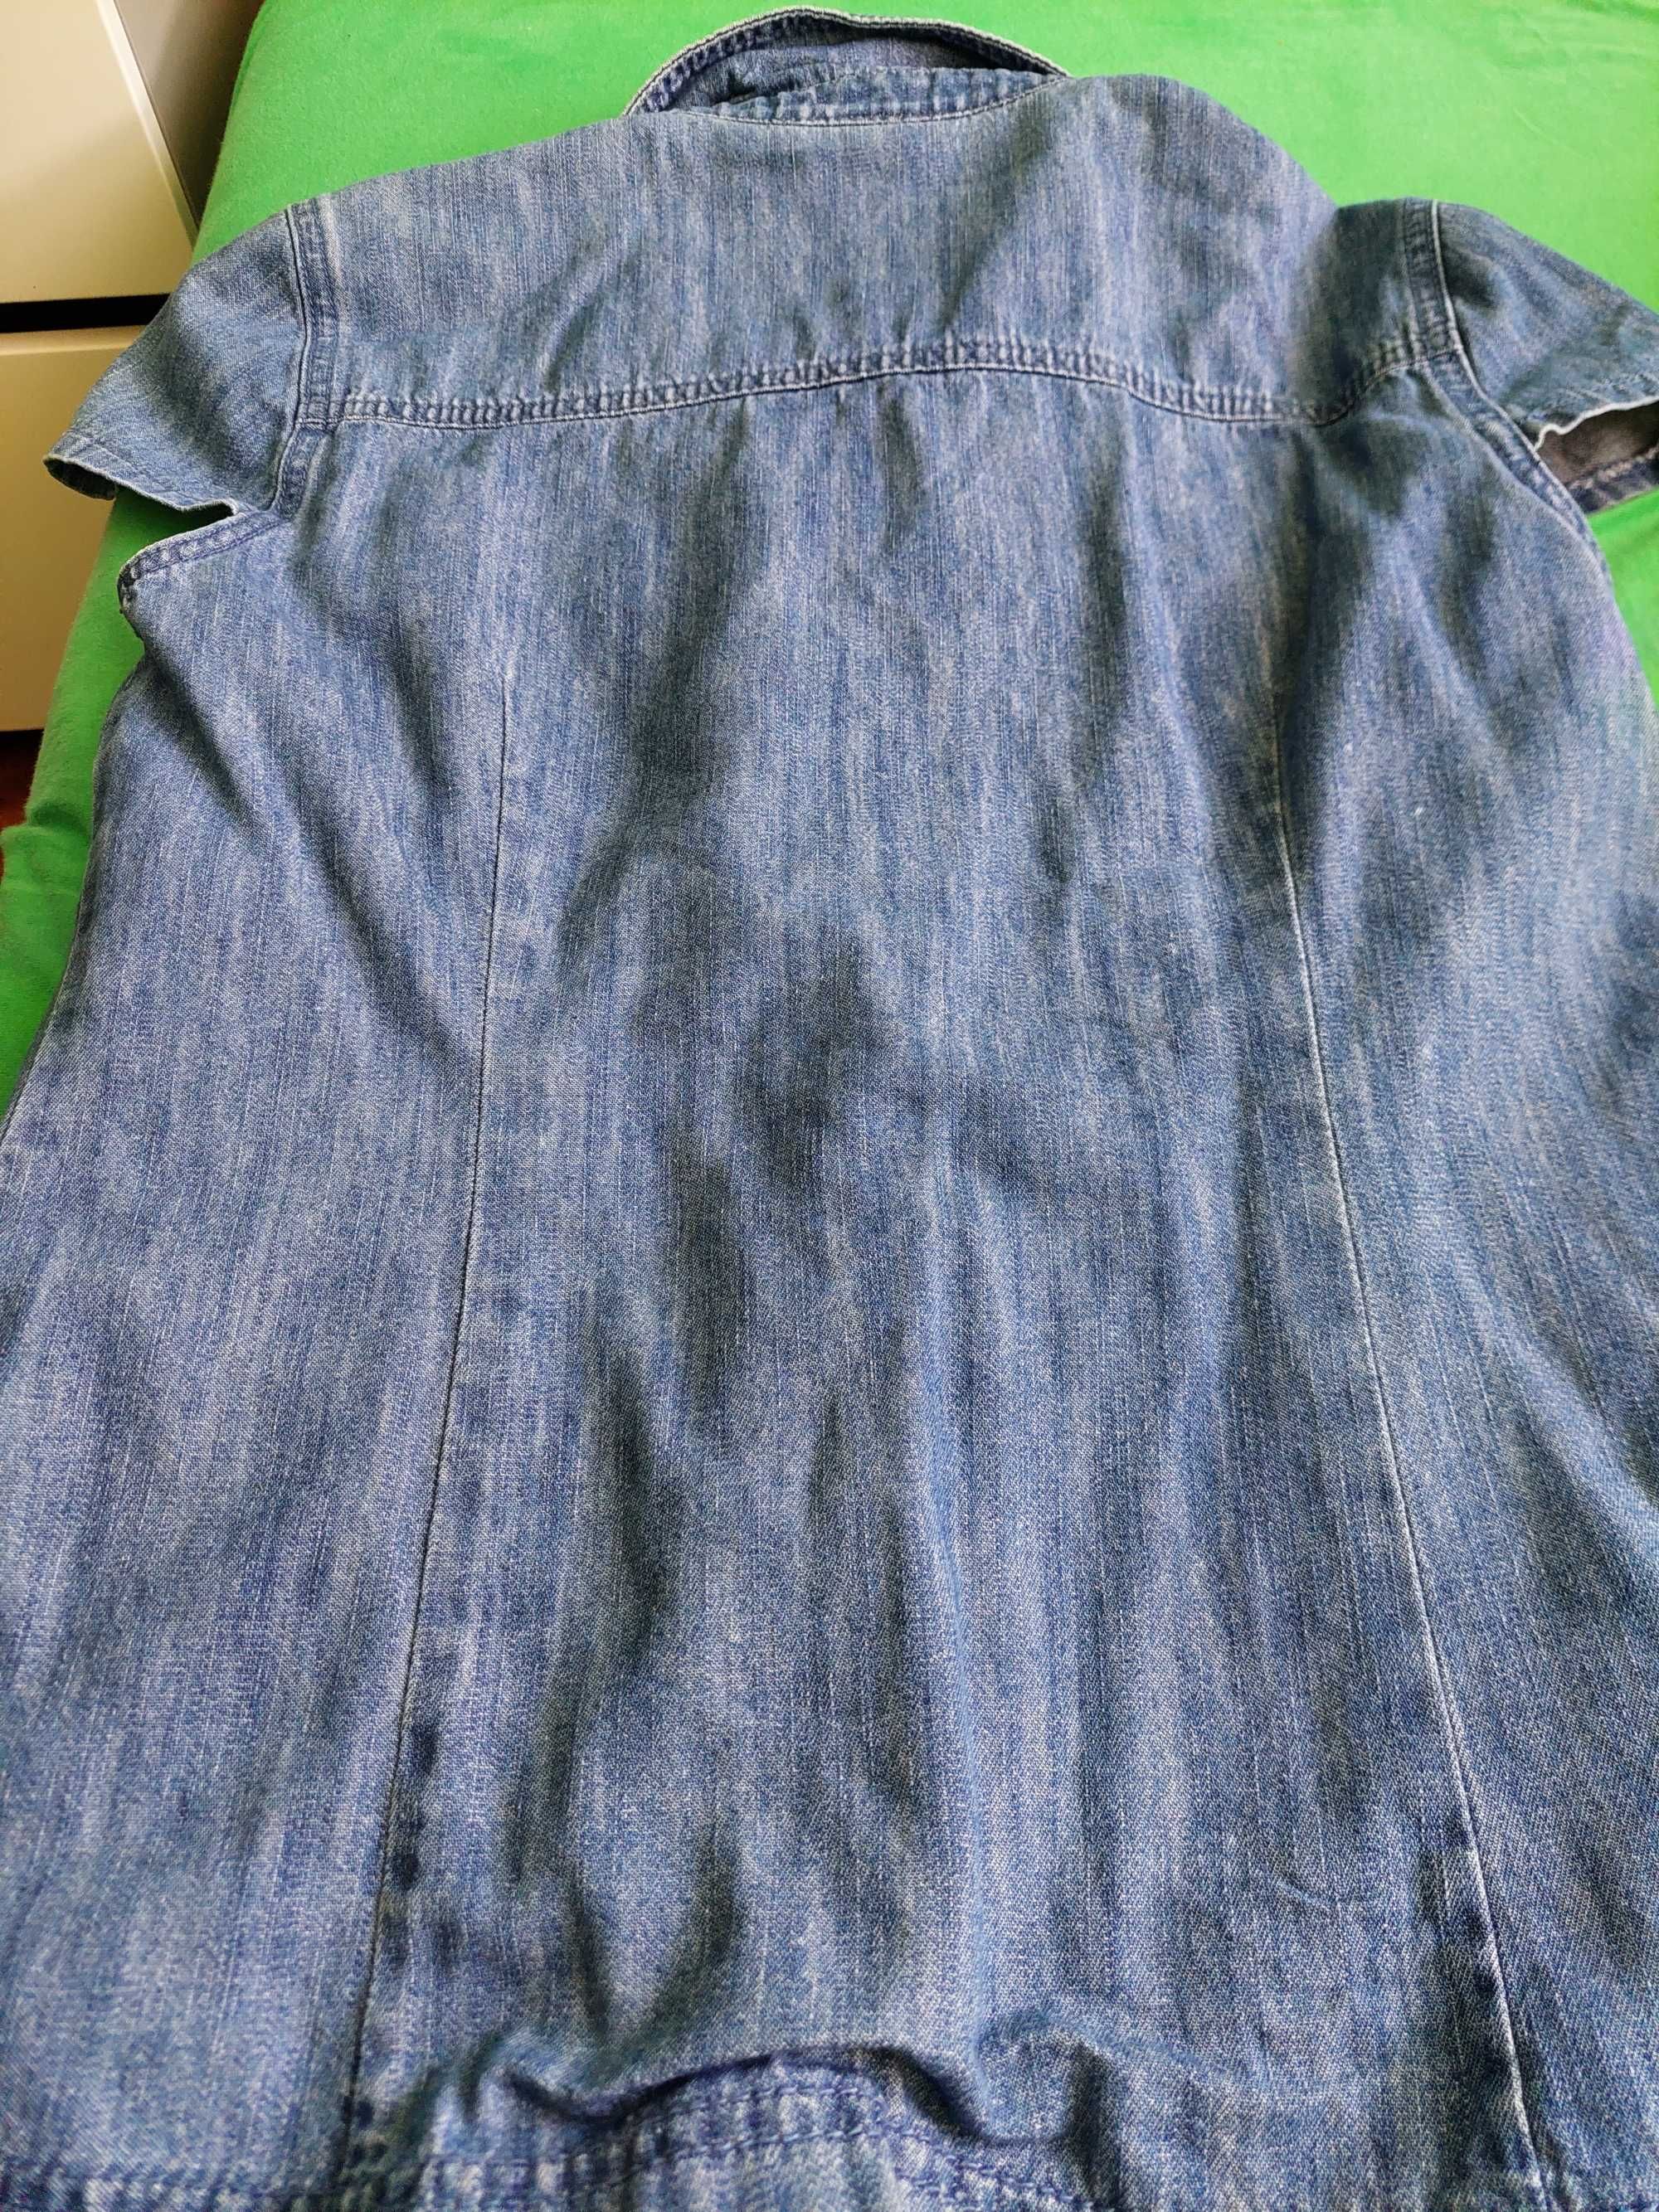 Damska koszula jeansowa krótki rękaw modeszene falbanki rozmiar 38